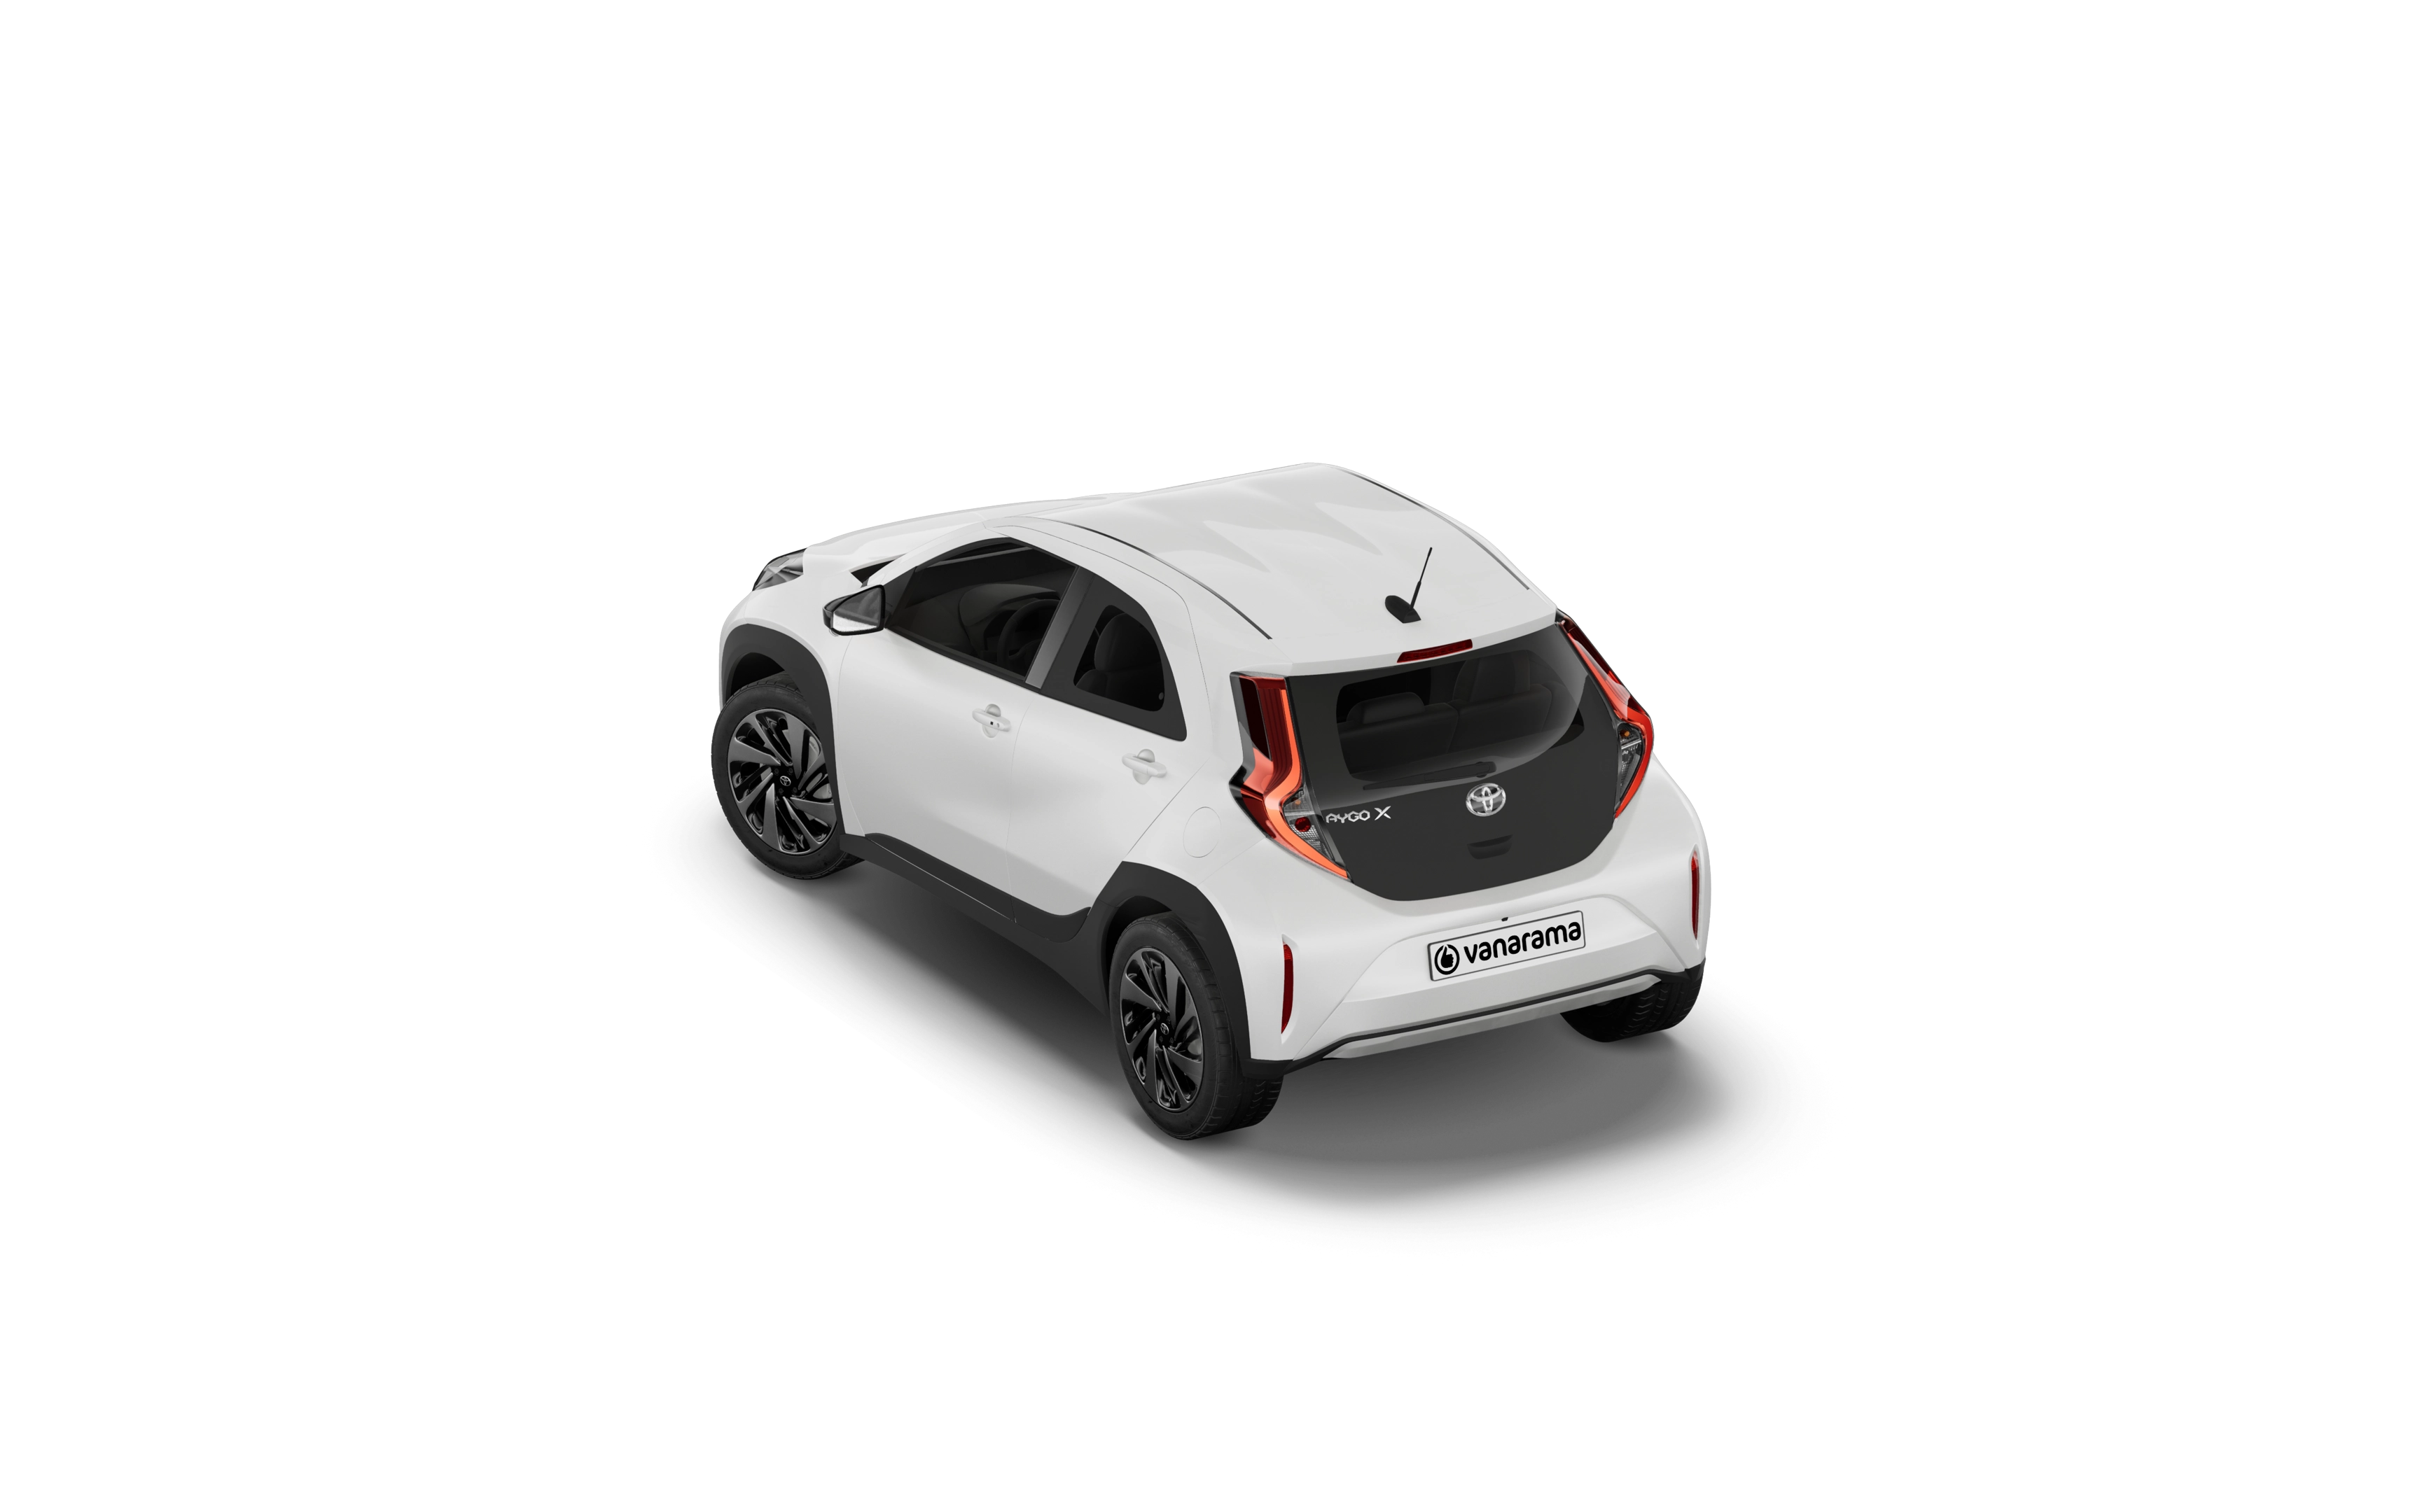 Toyota aygo x hatchback 1.0 vvt-i edge 5 doors auto [canvas/parking]